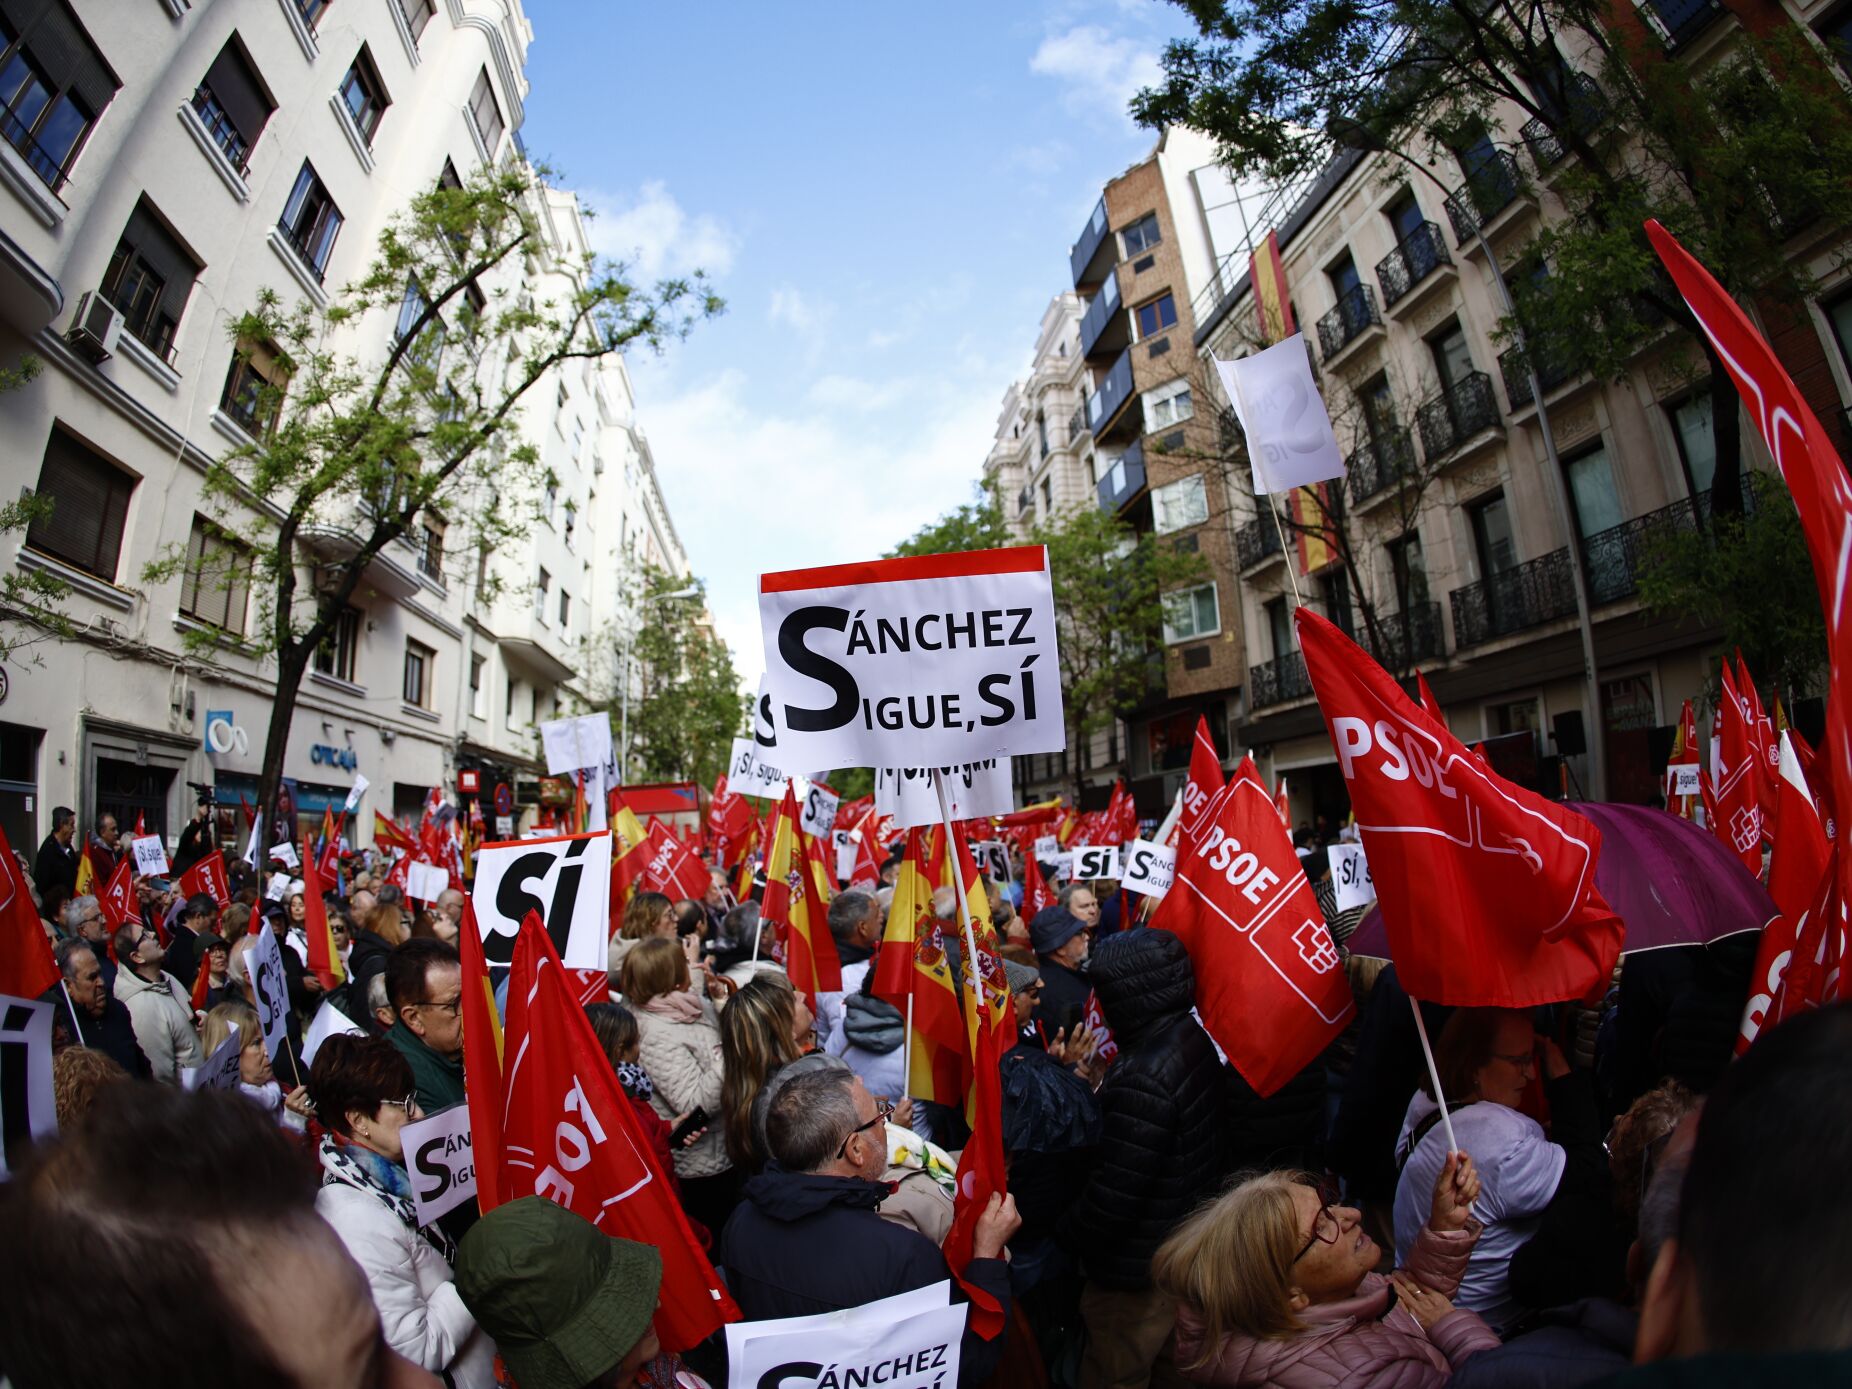 "Pedro, fica". PSOE denuncia "guerra suja" da direita e pede a Sánchez que não se demita